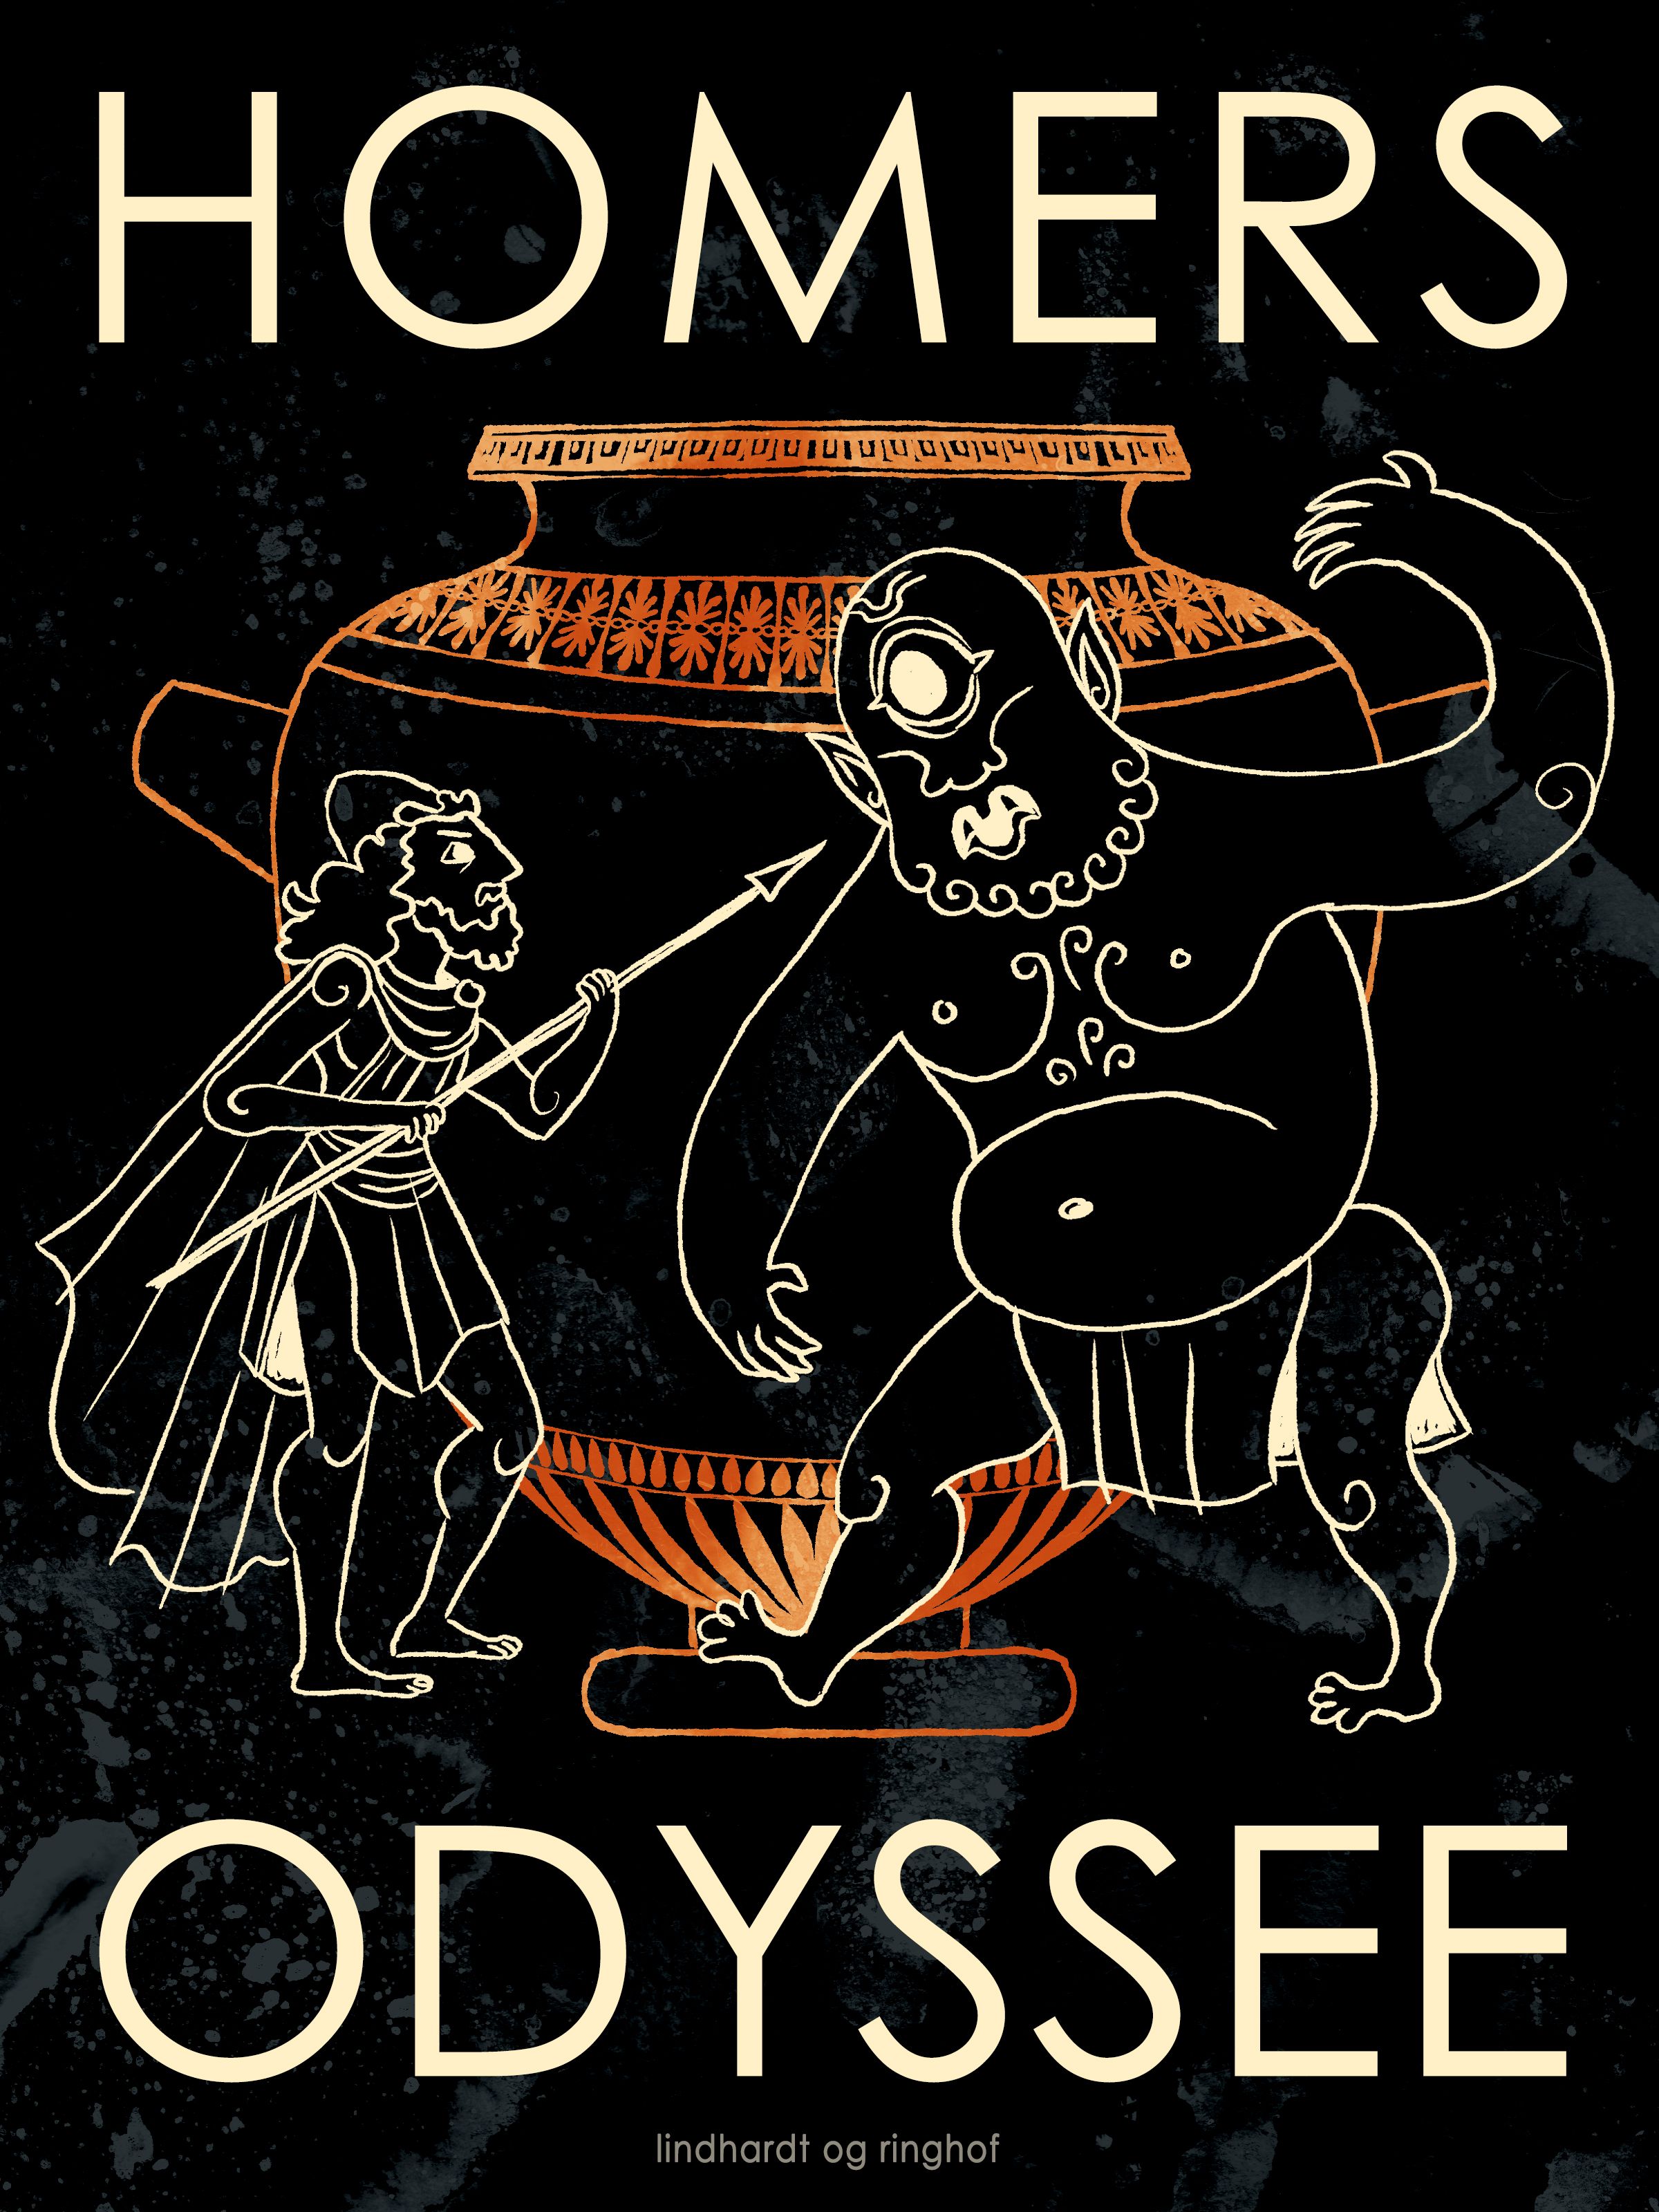 Homers Odyssee, e-bog af Homer